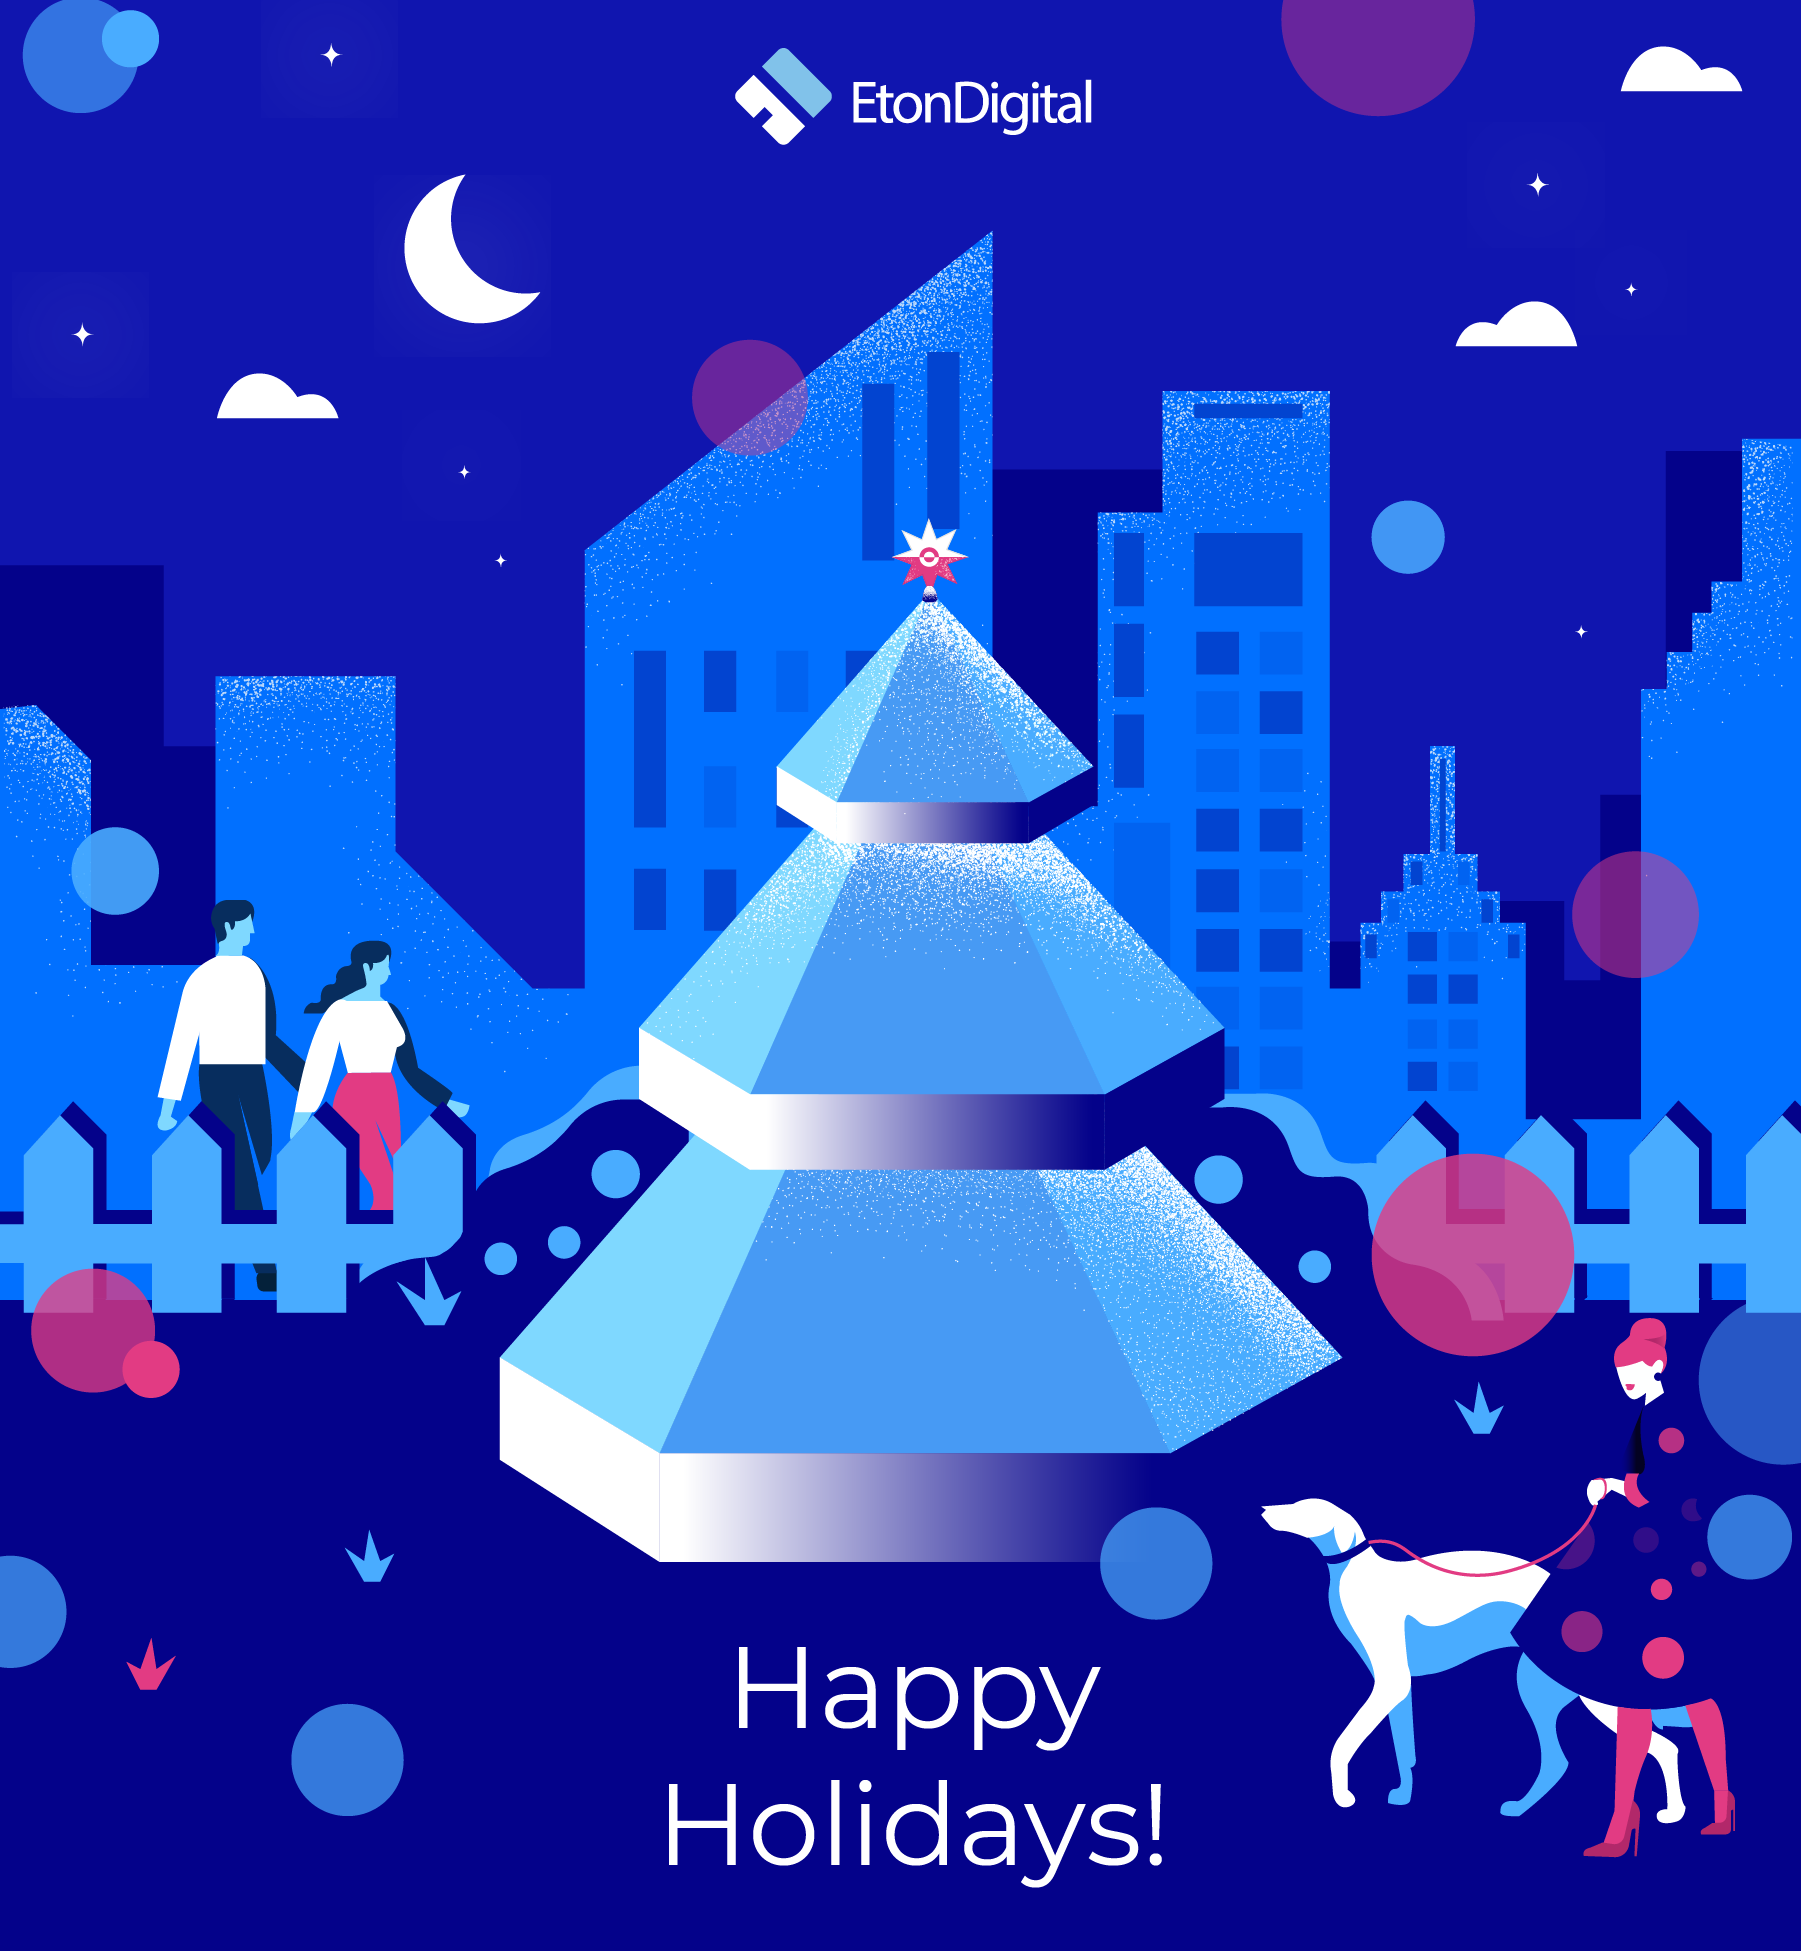 Happy Holidays from Eton Digital 2018